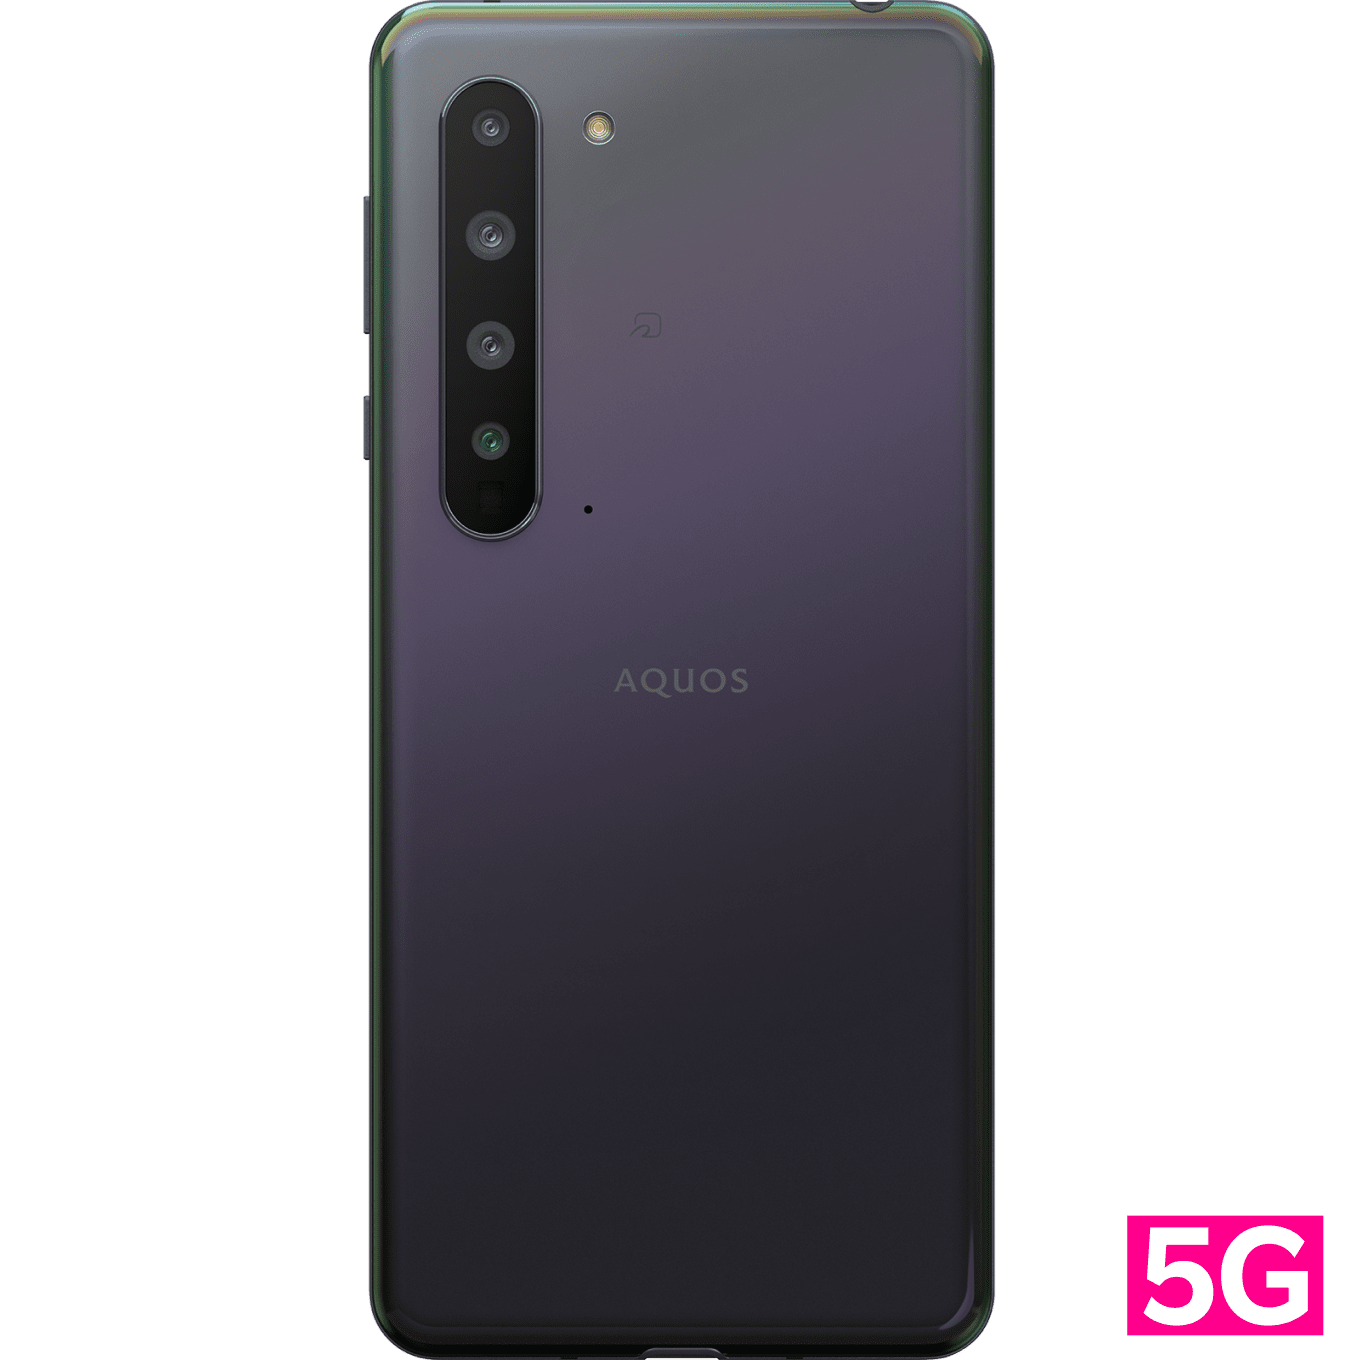 AQUOS R5G | Android | 製品 | 楽天モバイル